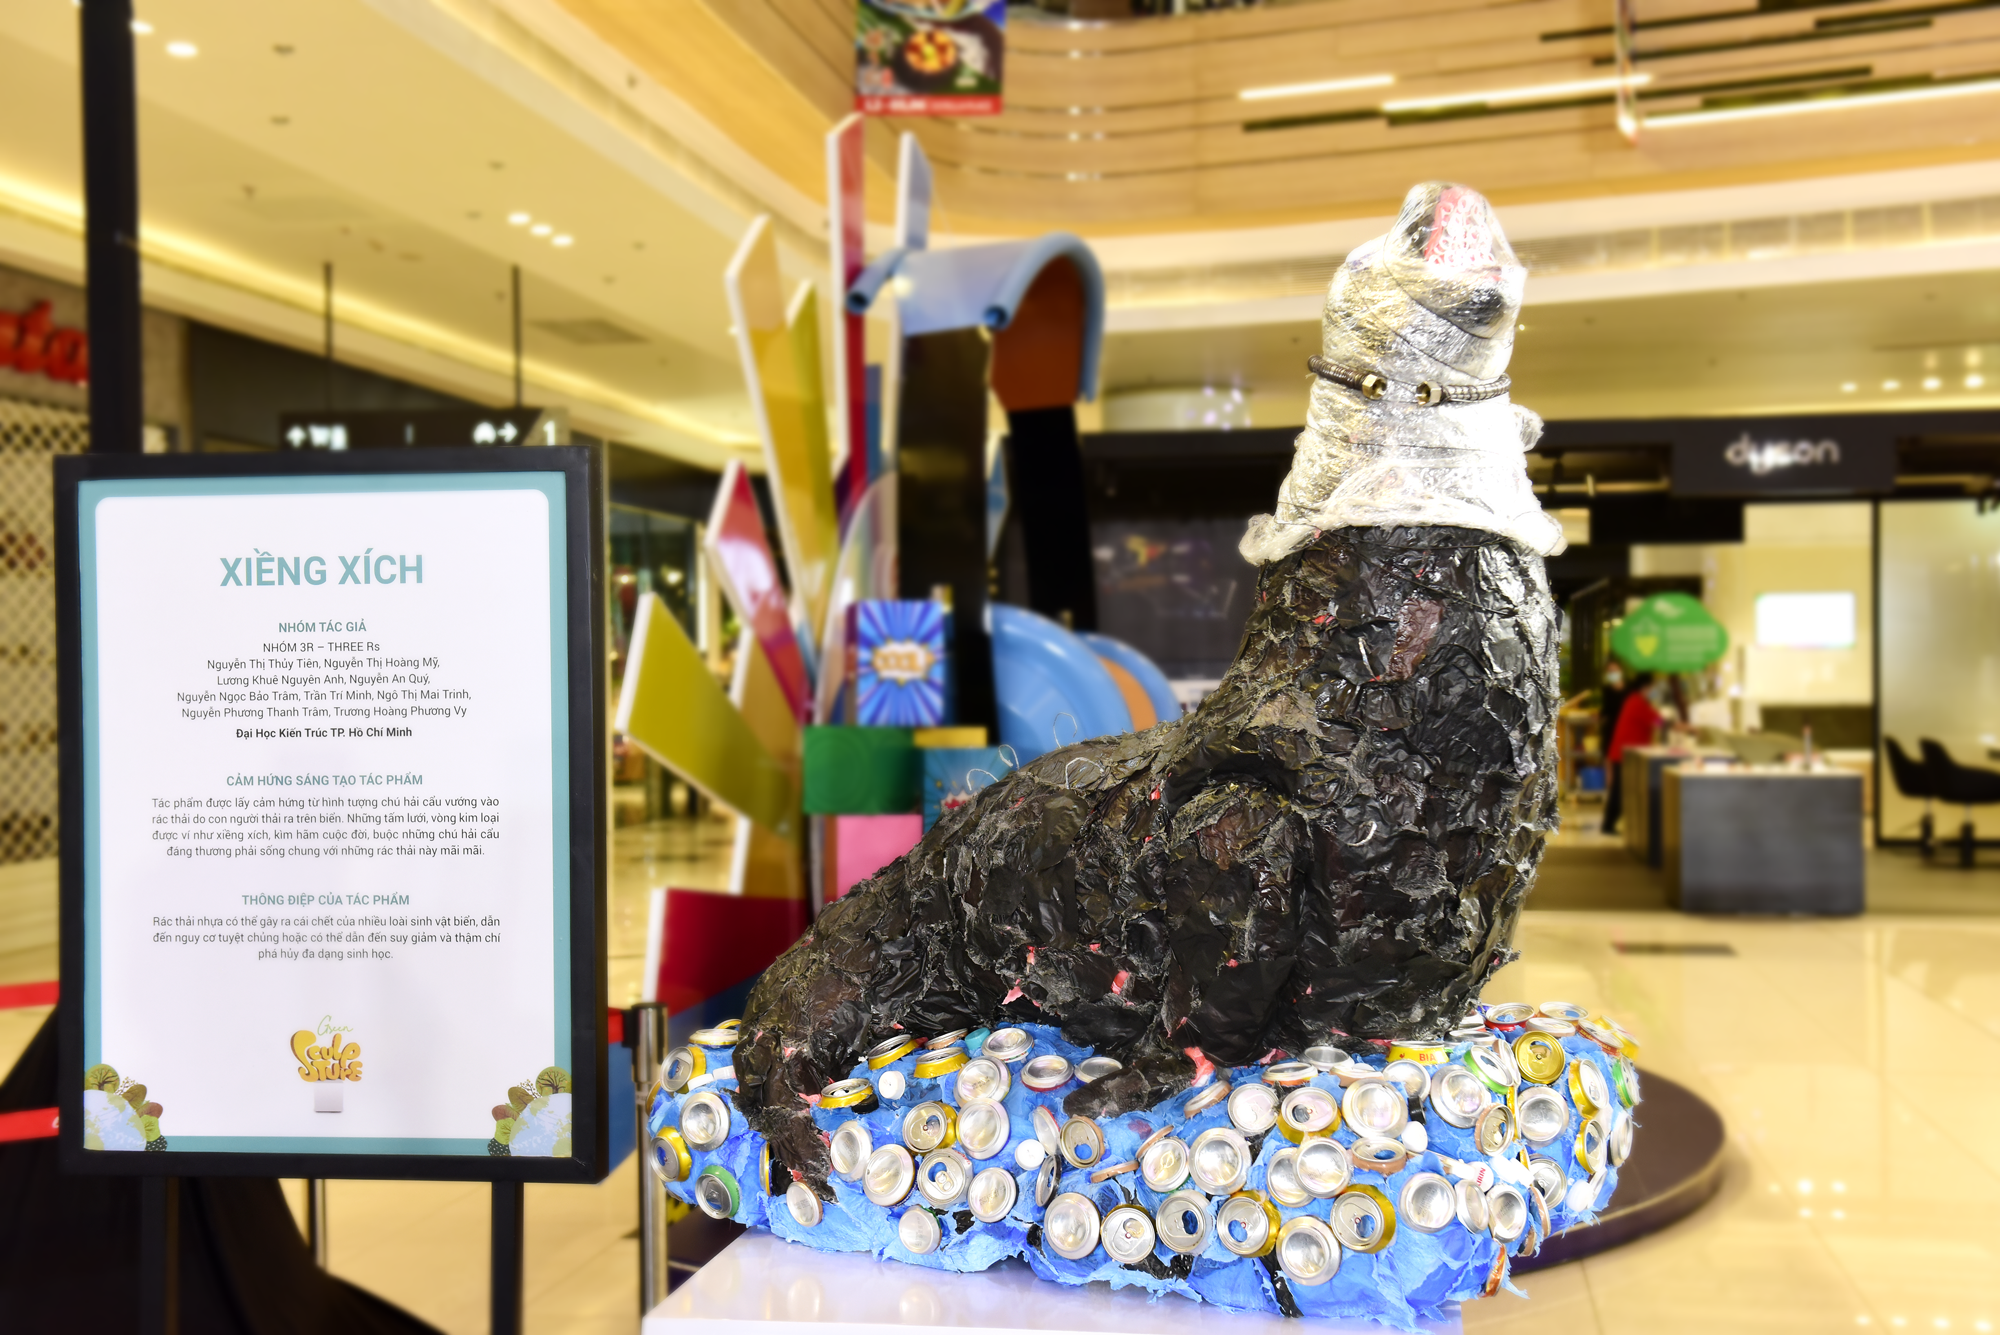 “Xiềng Xích", tác phẩm đoạt giải nhất cuộc thi Green Sculpture, tạo hình từ các vật liệu như vỏ chai nhựa, lon nước ngọt, nắp chai và túi nilon, được thực hiện bởi nhóm 3R đến từ trường Đại học Kiến Trúc TP. Hồ Chí Minh.